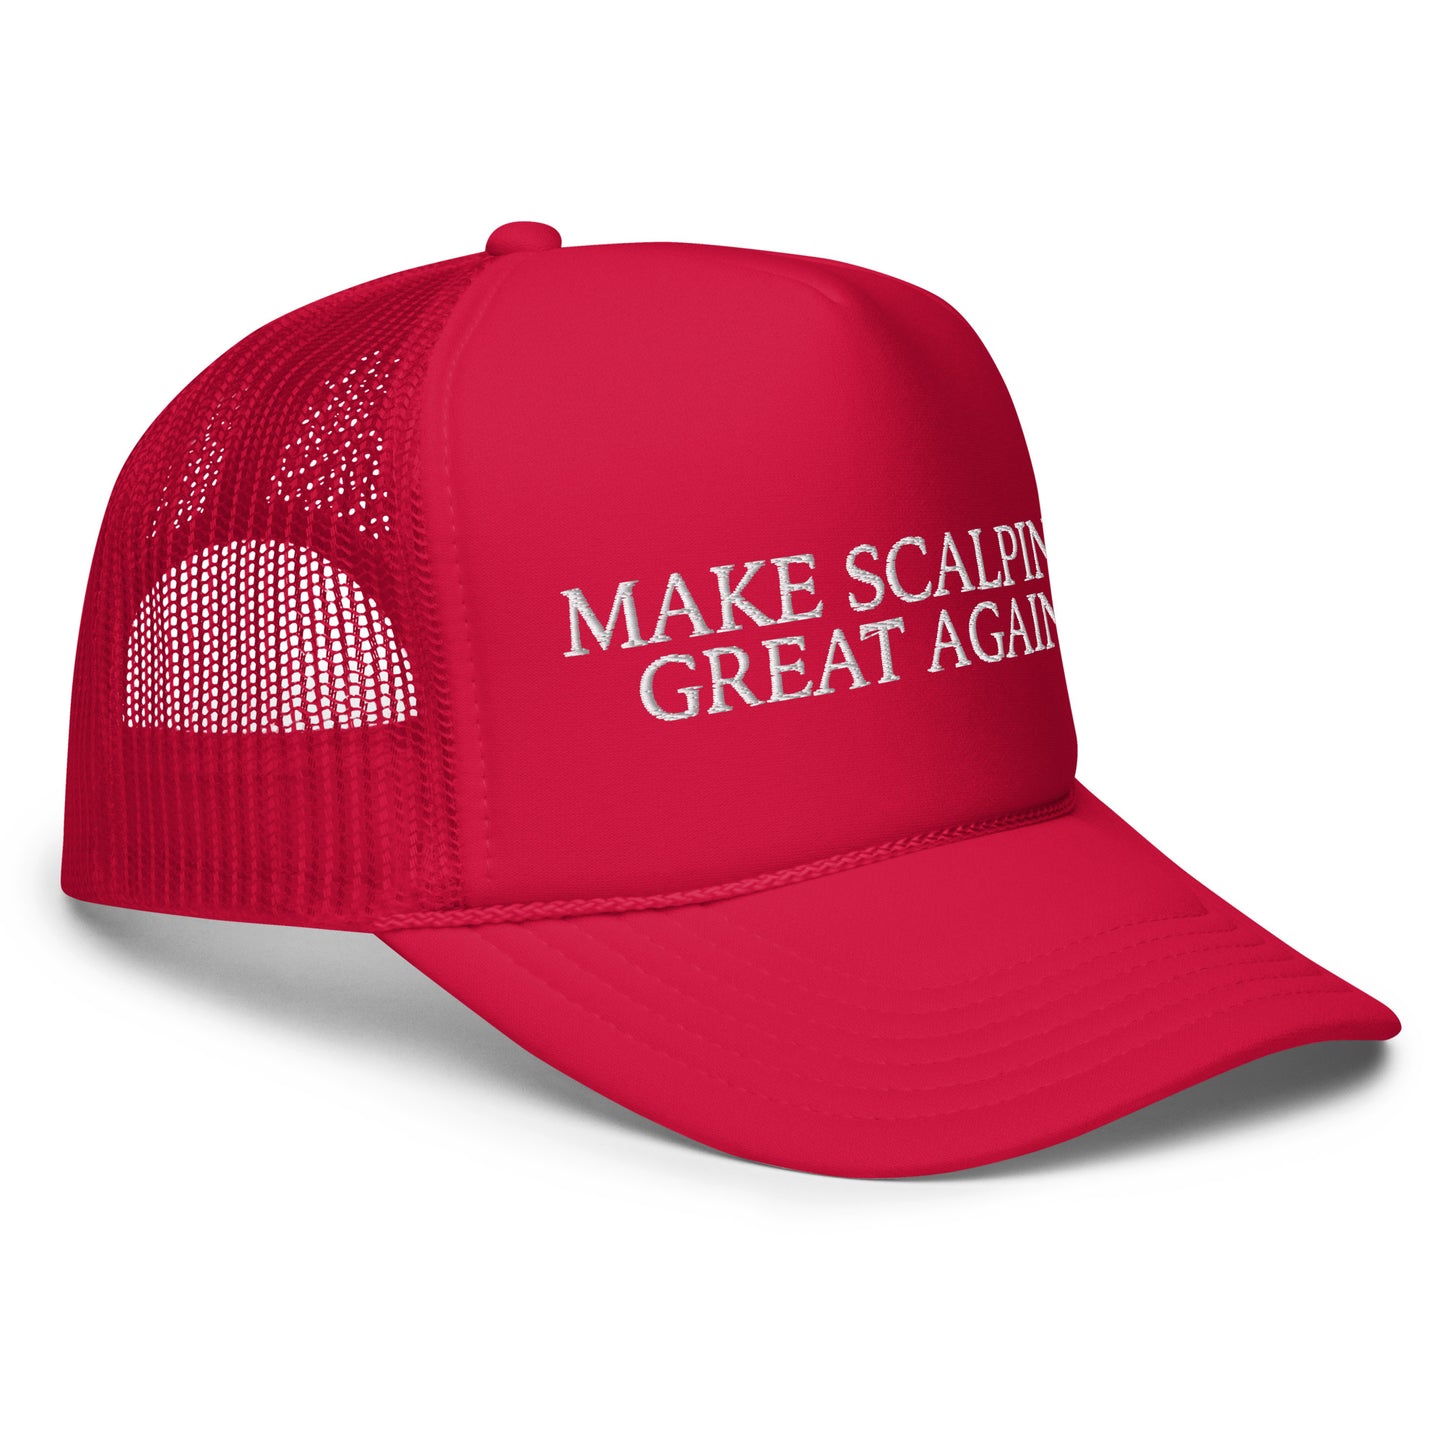 MAKE SCALPING GREAT AGAIN Foam trucker hat